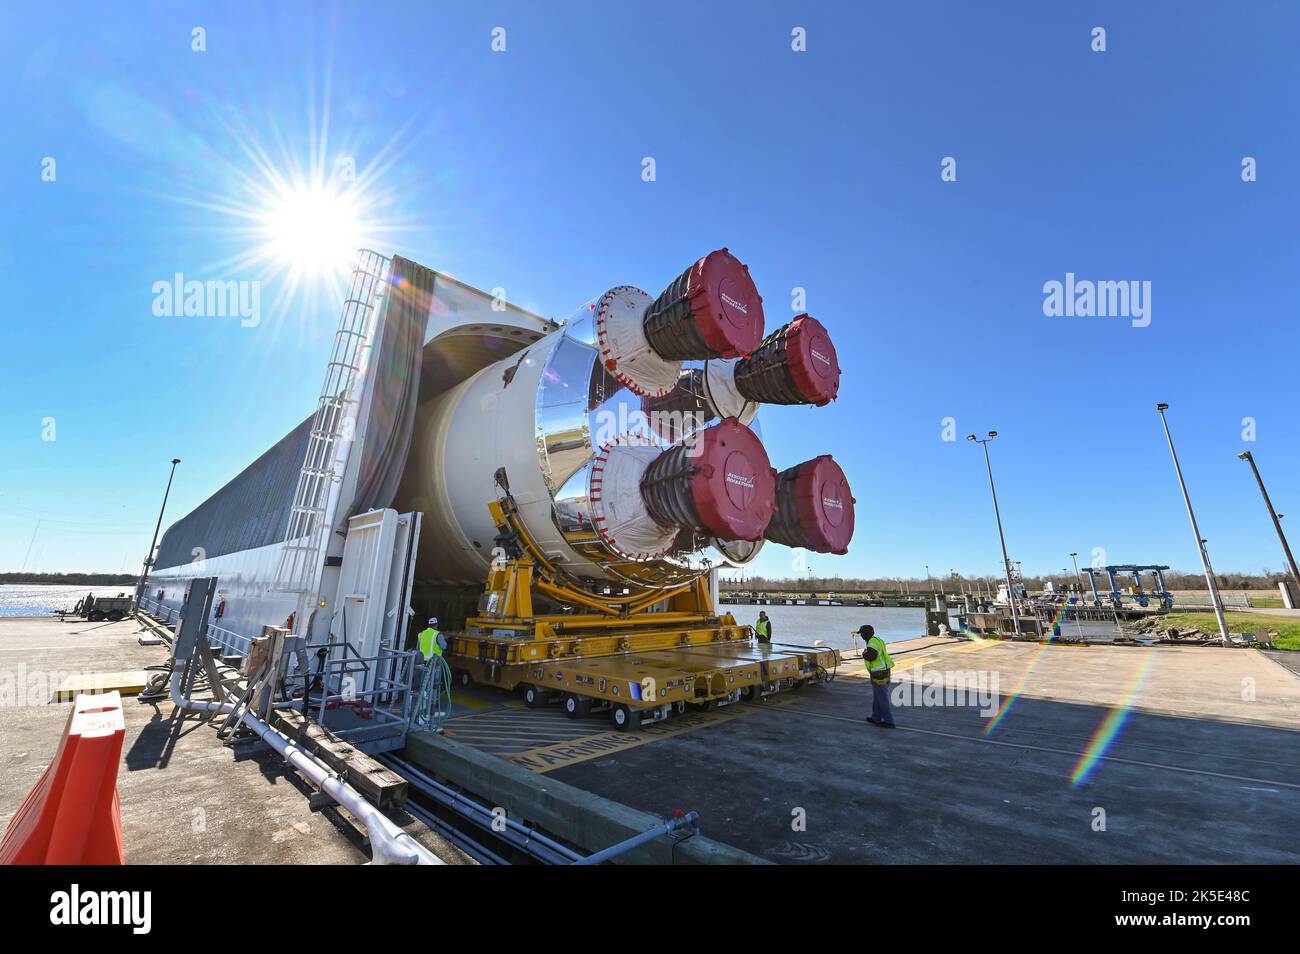 Die Michoud Assembly Facility der NASA rollte die 212 Meter hohe Kernrakete des Space Launch Systems auf die Pegasus-Barge, die sie an das Stennis Space Center der NASA für eine umfassende Reihe von technischen Tests, den Green Run, versenden wird. Nach Abschluss des Green Run wird die Kernphase über den Golf von Mexiko zum Kennedy Space Center der NASA geschickt, wo sie zusammen mit den riesigen Boostern von SLS und der Orion-Sonde auf Artemis I, einer optimierten Version eines Originalbildes der NASA, ins All starten wird. Quelle: NASA Stockfoto